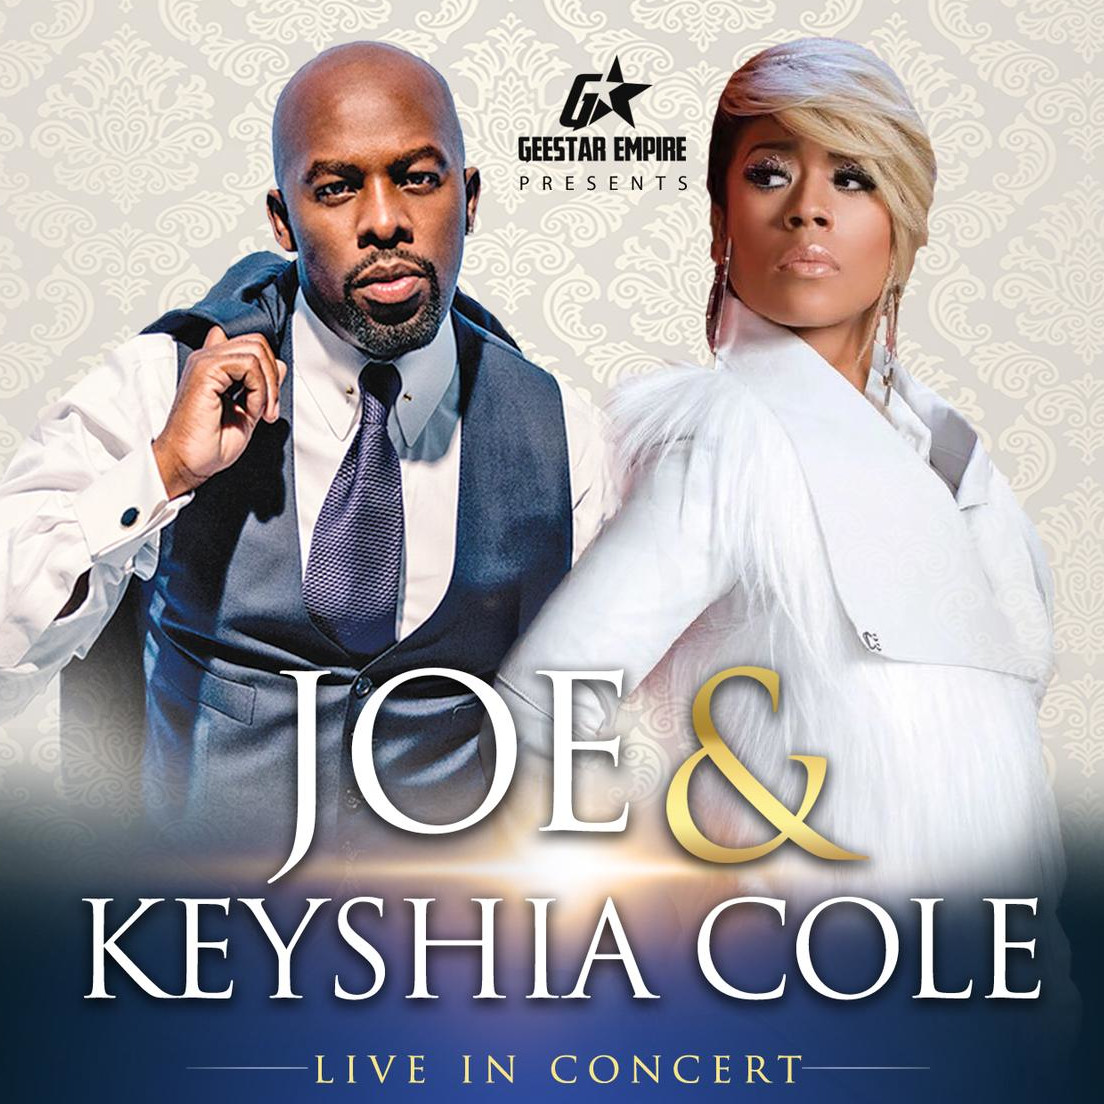 Buy Joe & Keyshia Cole tickets, Joe & Keyshia Cole tour details, Joe